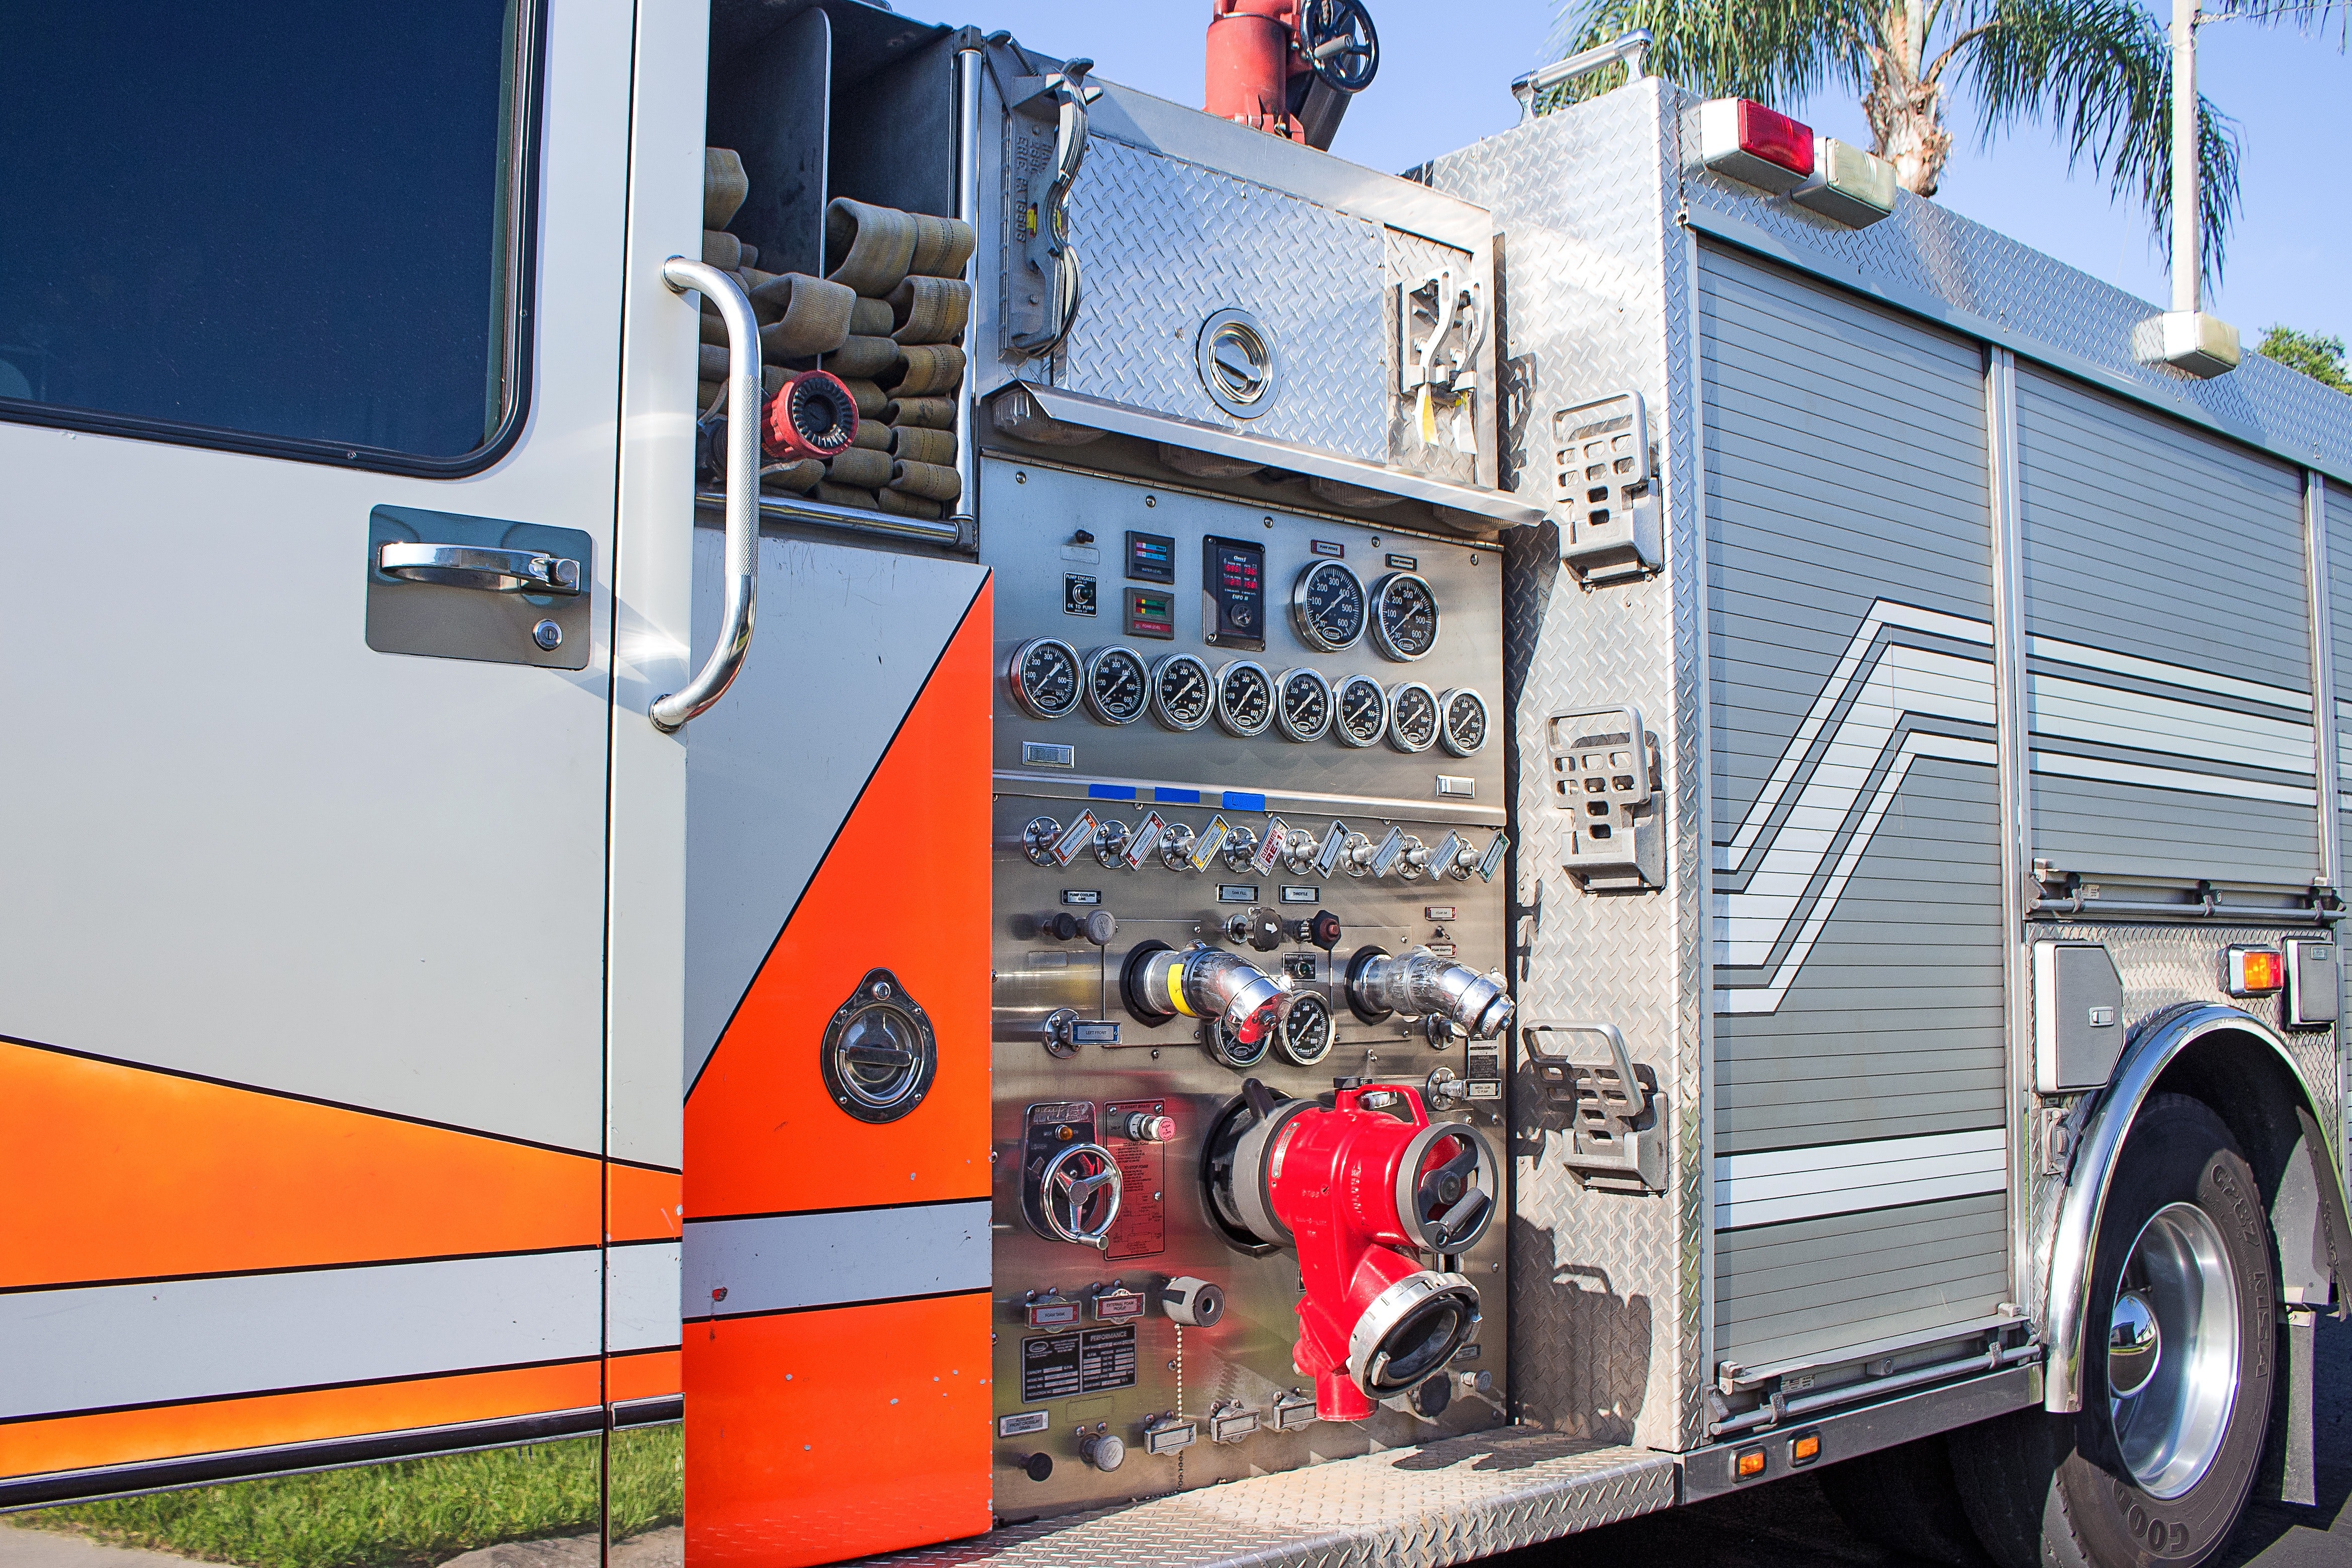 Brandweerauto met werkend systeem voor Dumitrita met 3200 inwoners